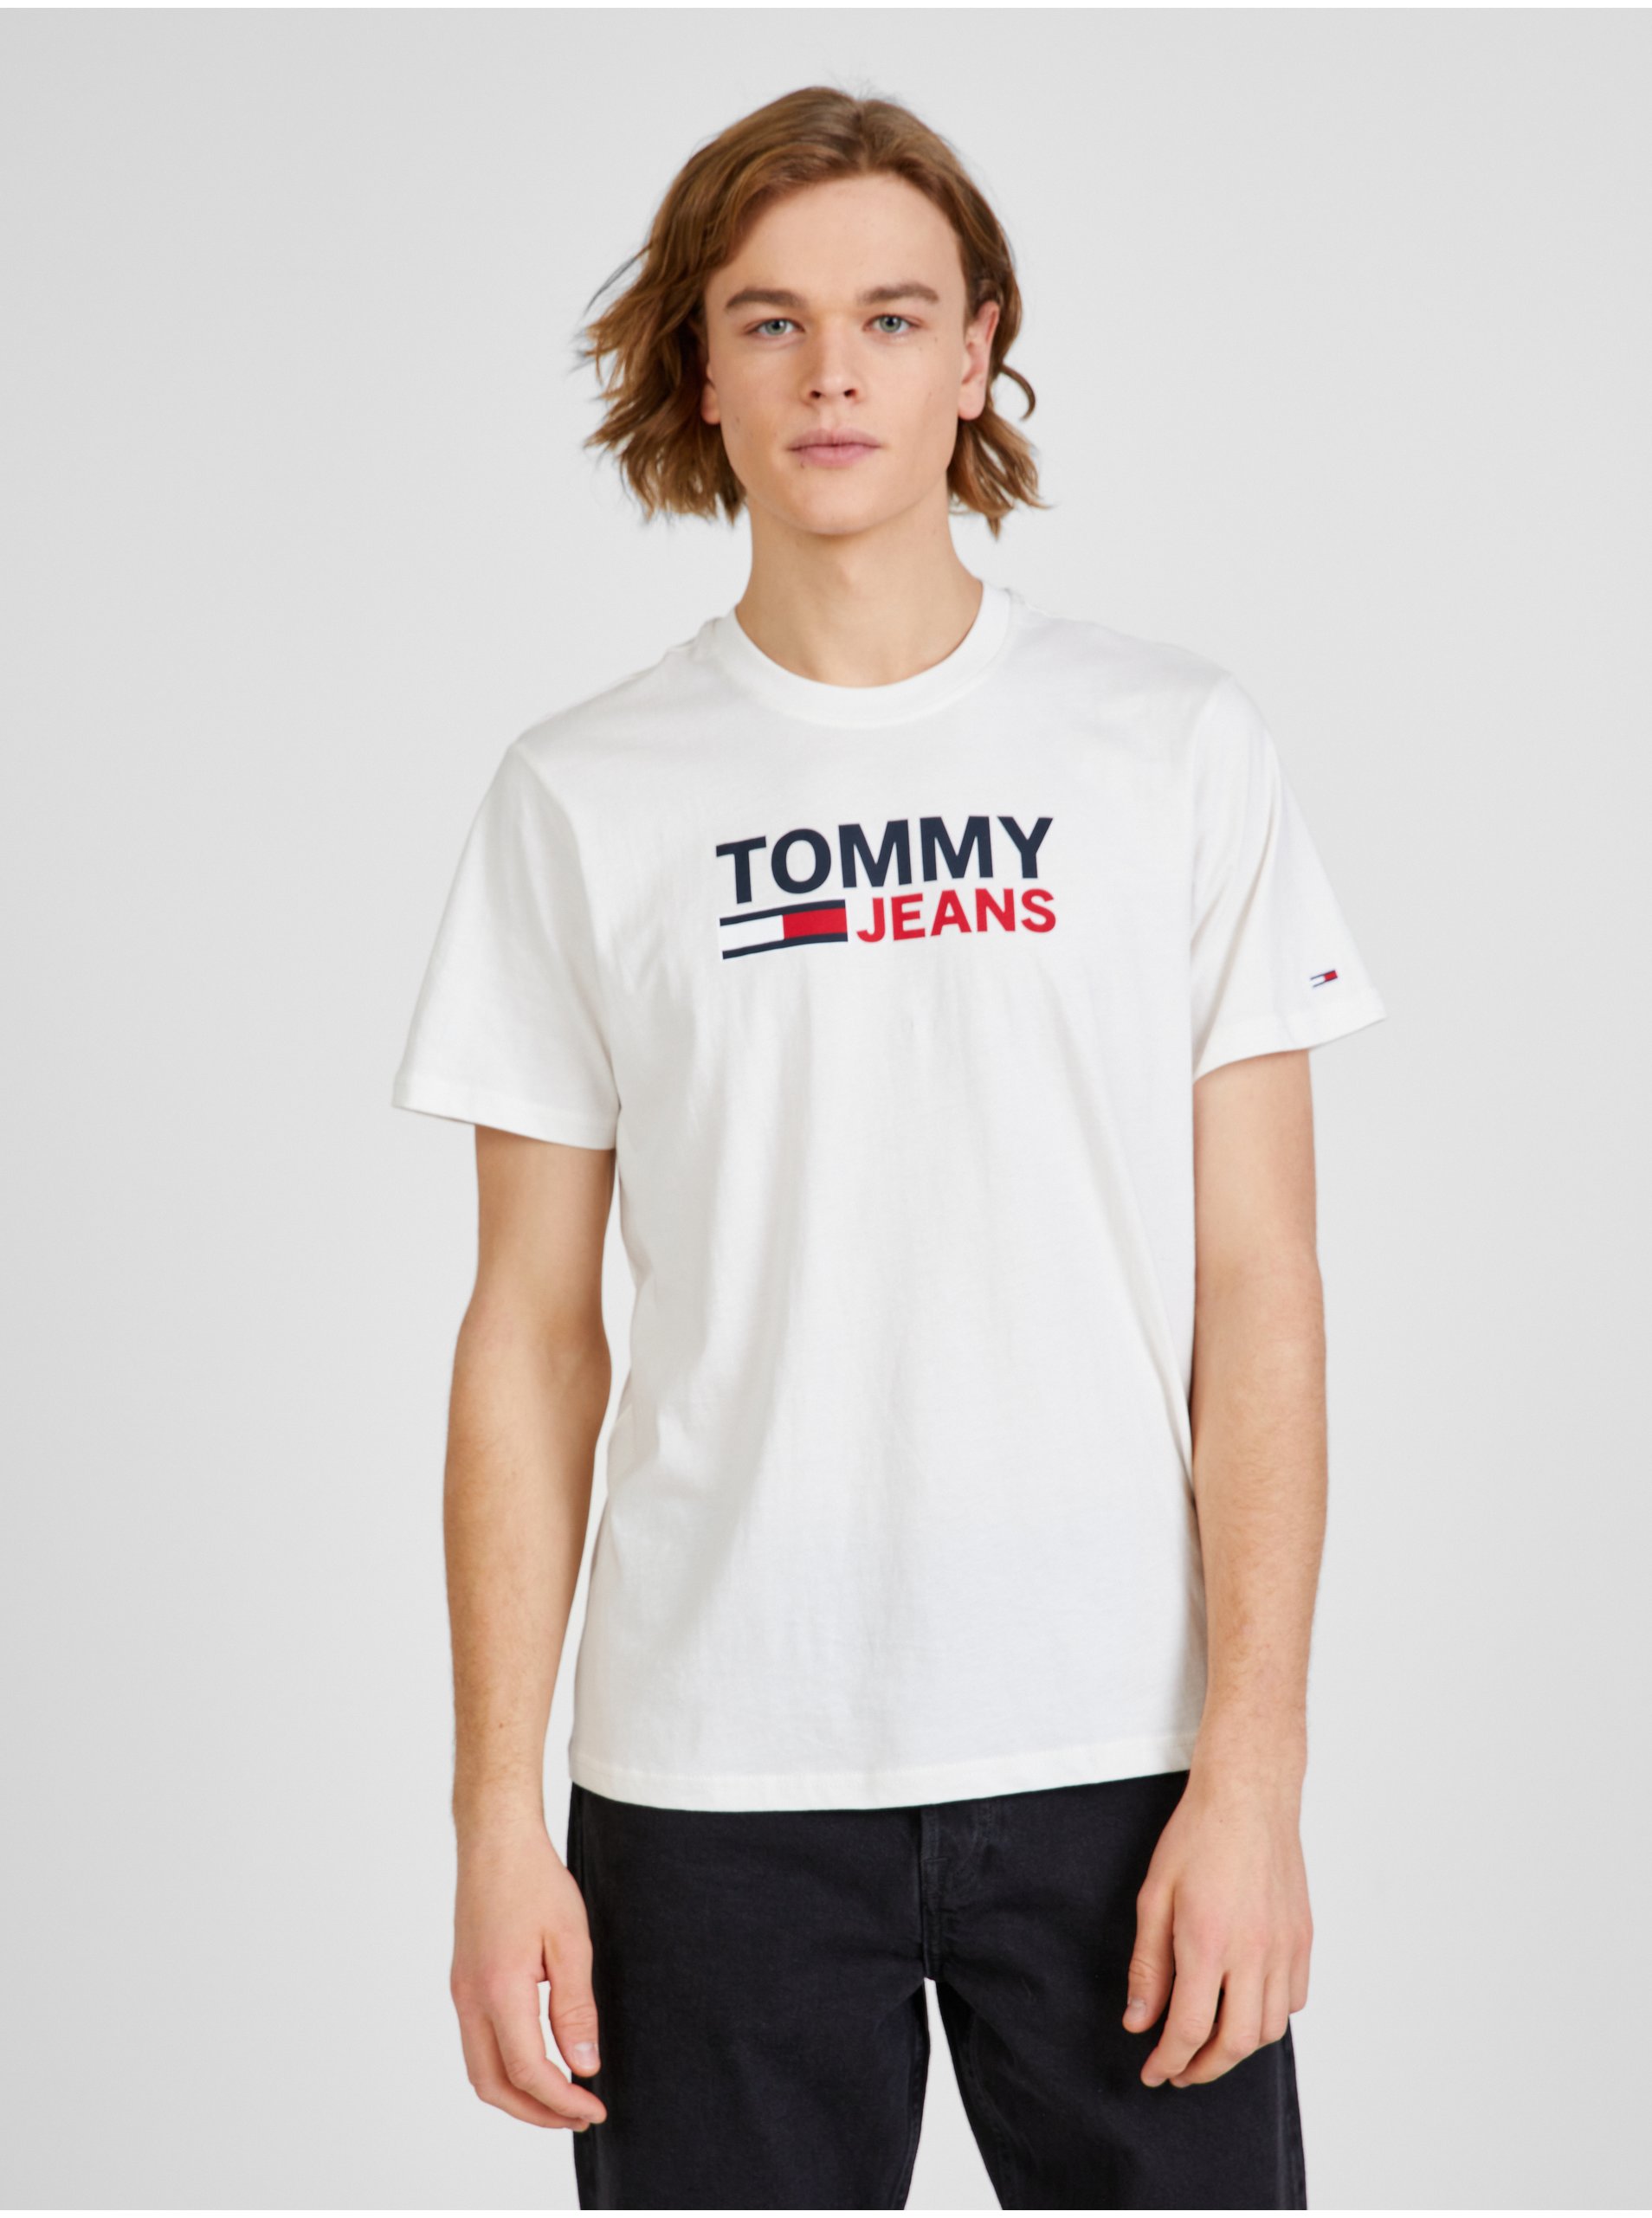 Lacno Biele pánske tričko s potlačou Tommy Jeans